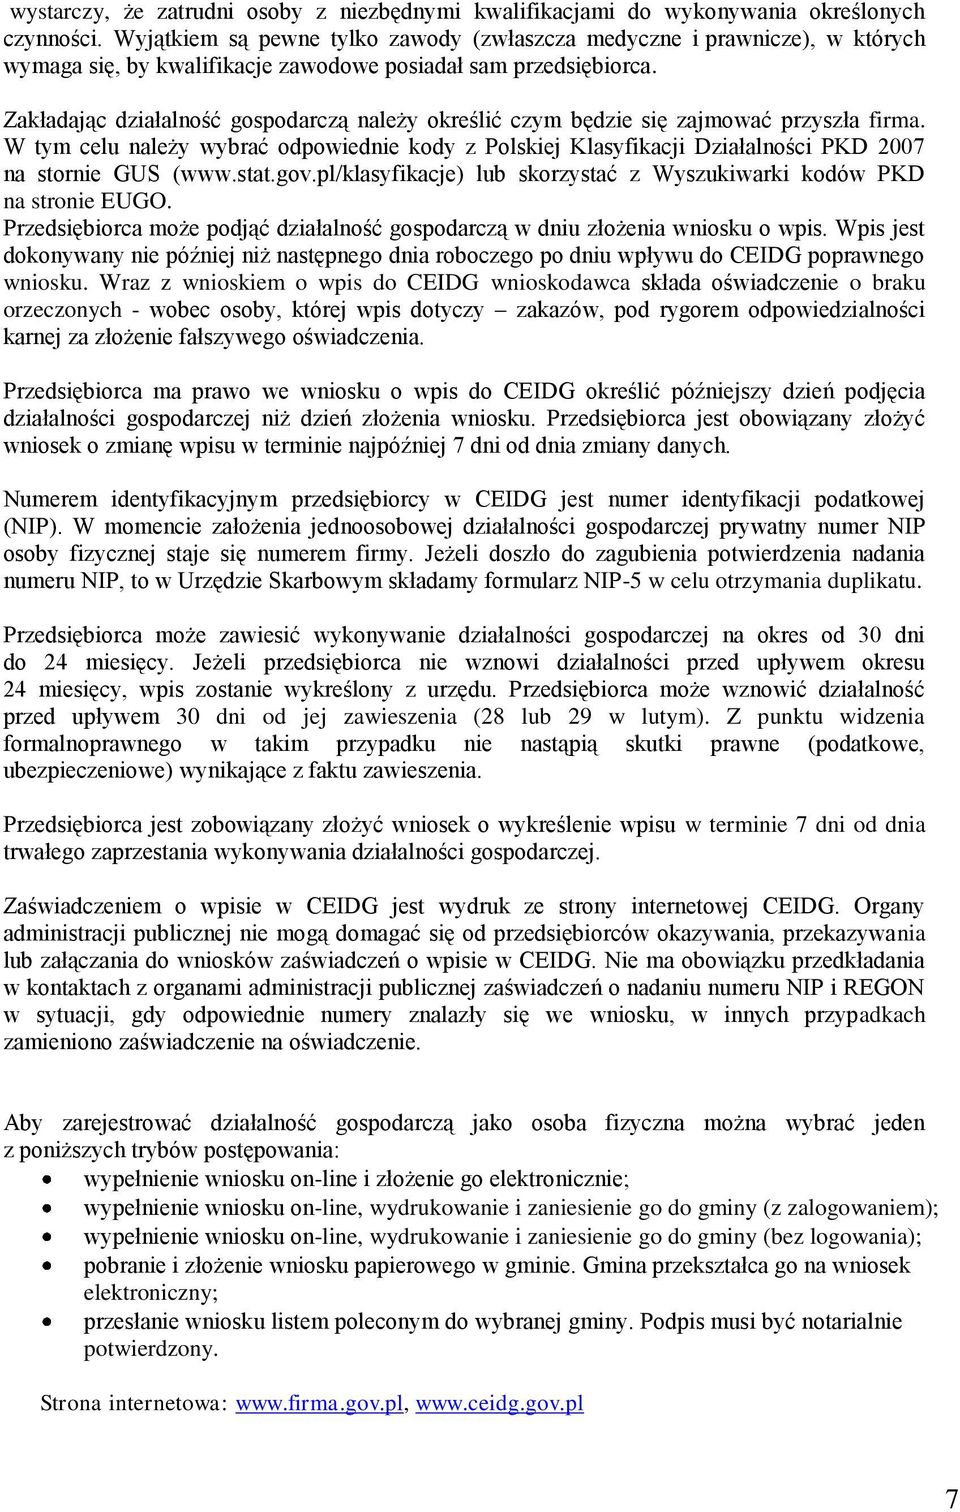 Zakładając działalność gospodarczą należy określić czym będzie się zajmować przyszła firma. W tym celu należy wybrać odpowiednie kody z Polskiej Klasyfikacji Działalności PKD 2007 na stornie GUS (www.